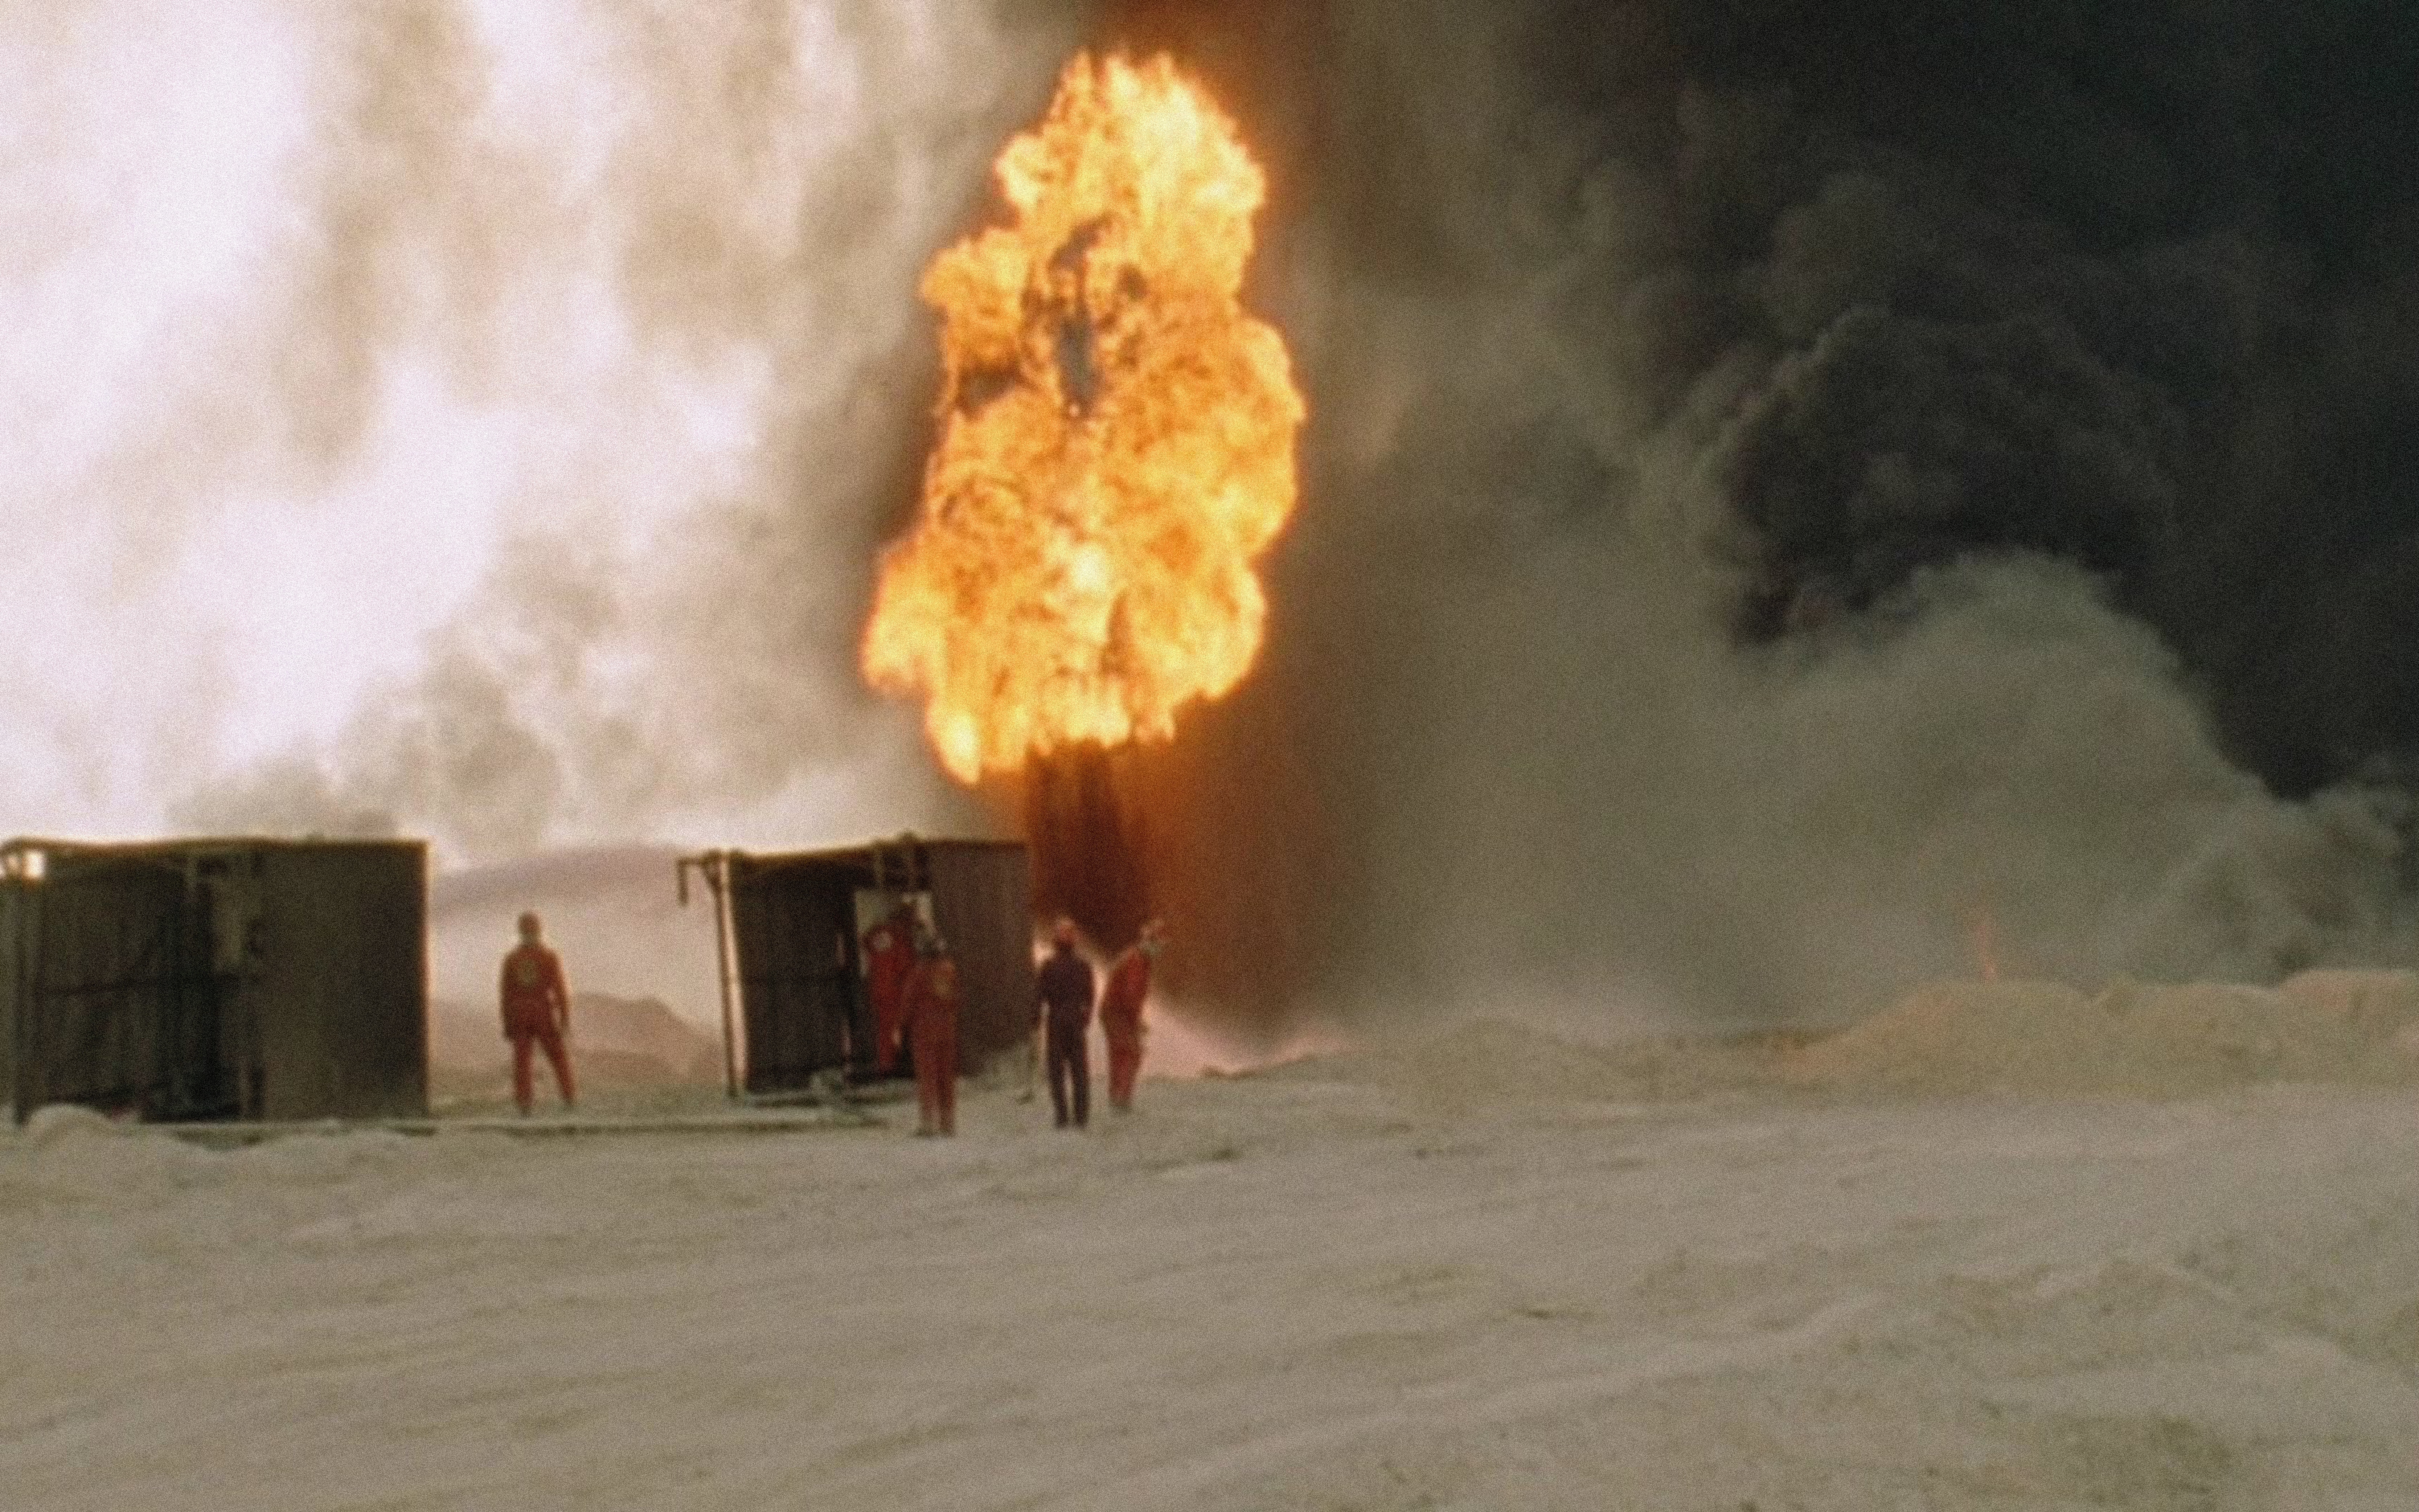 film still of an explosion